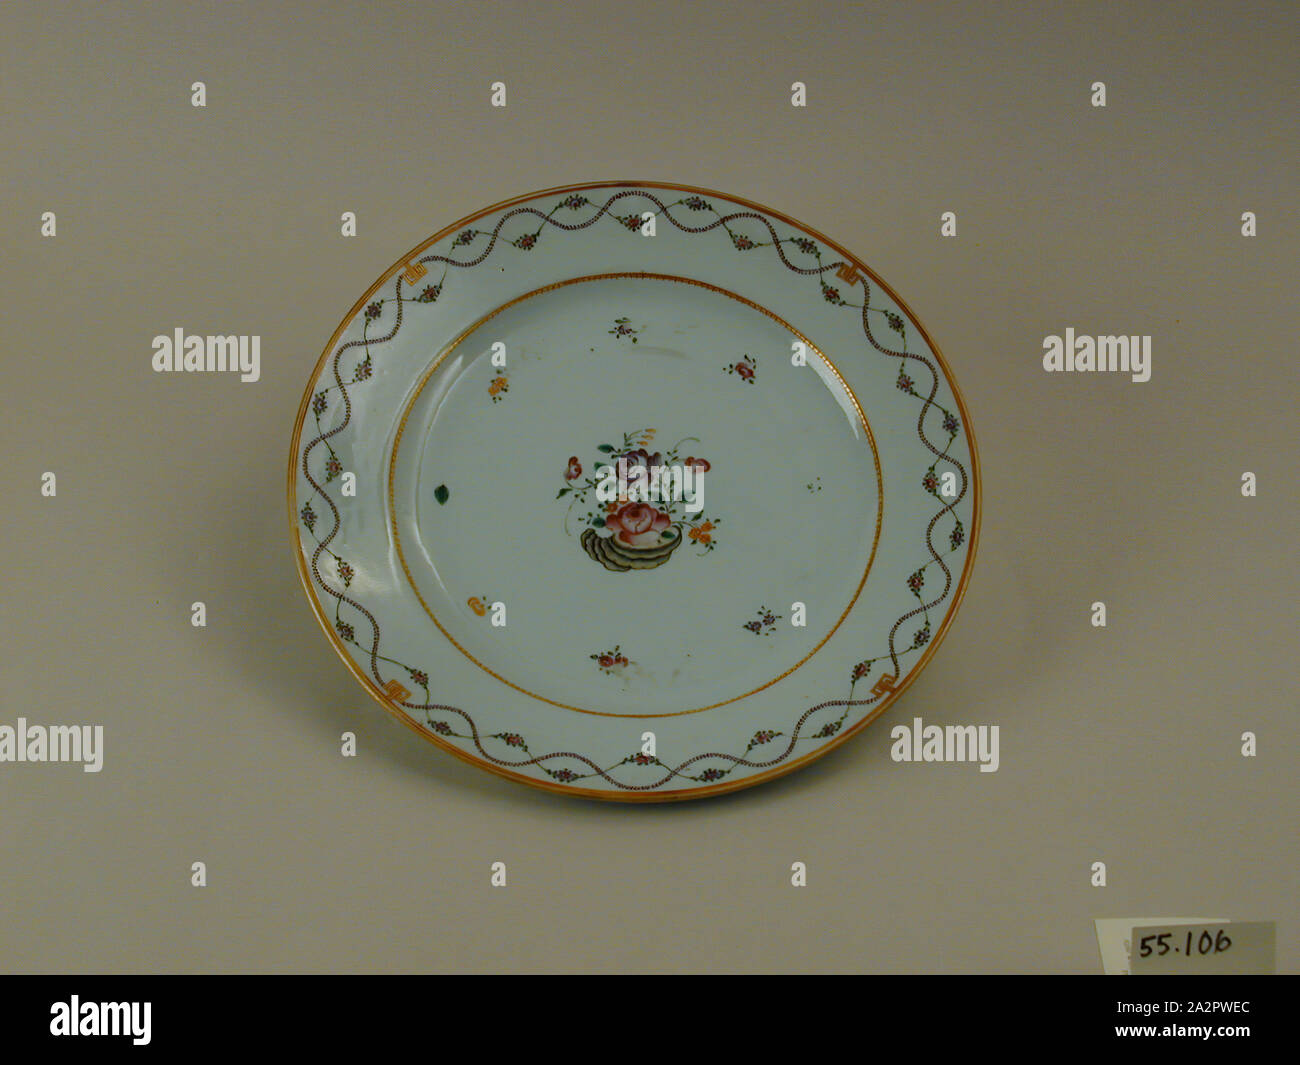 Inconnu (Chinois), la plaque, 1750/1800, carreaux de porcelaine à pâte dure avec émail polychrome et dorure, Hauteur x diamètre : 1 7/16 x 11 1/8 in. (3,7 x 28,3 cm Banque D'Images